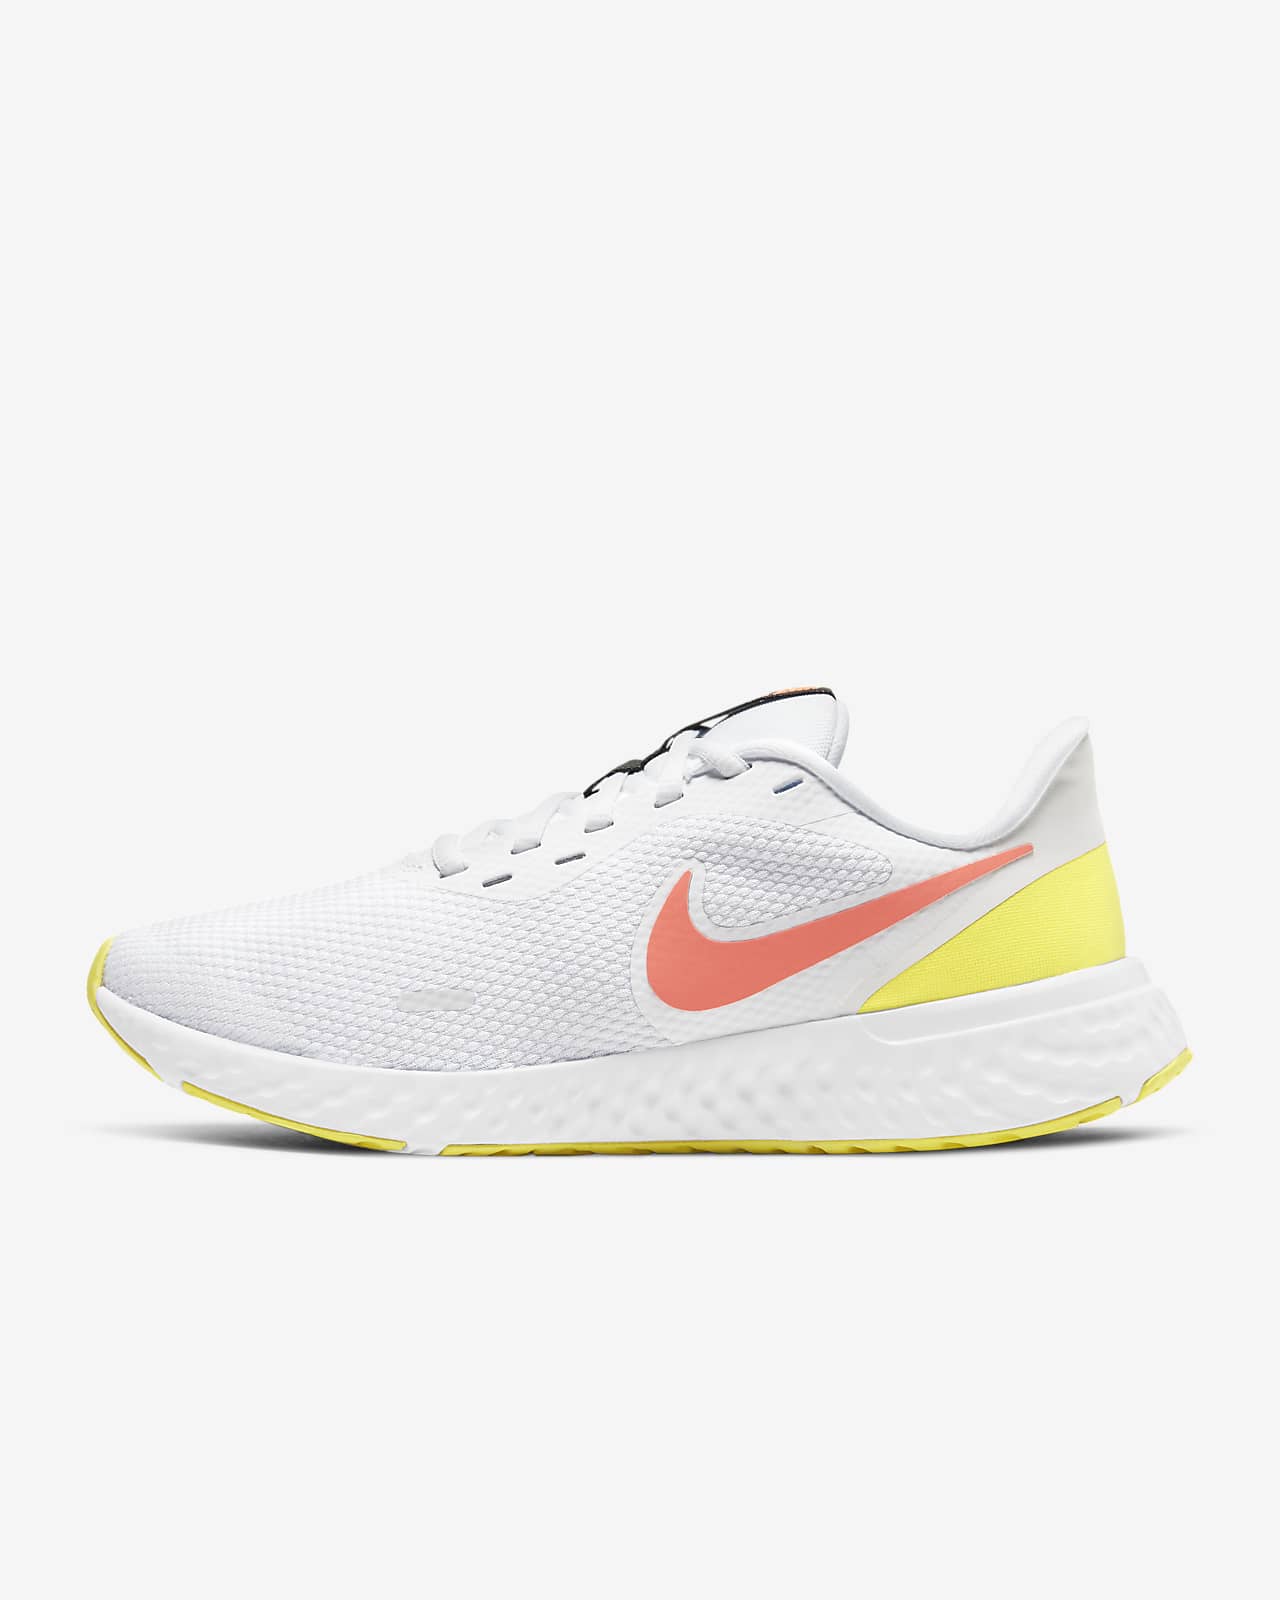 Chaussure de running sur route Nike Revolution 5 pour femme